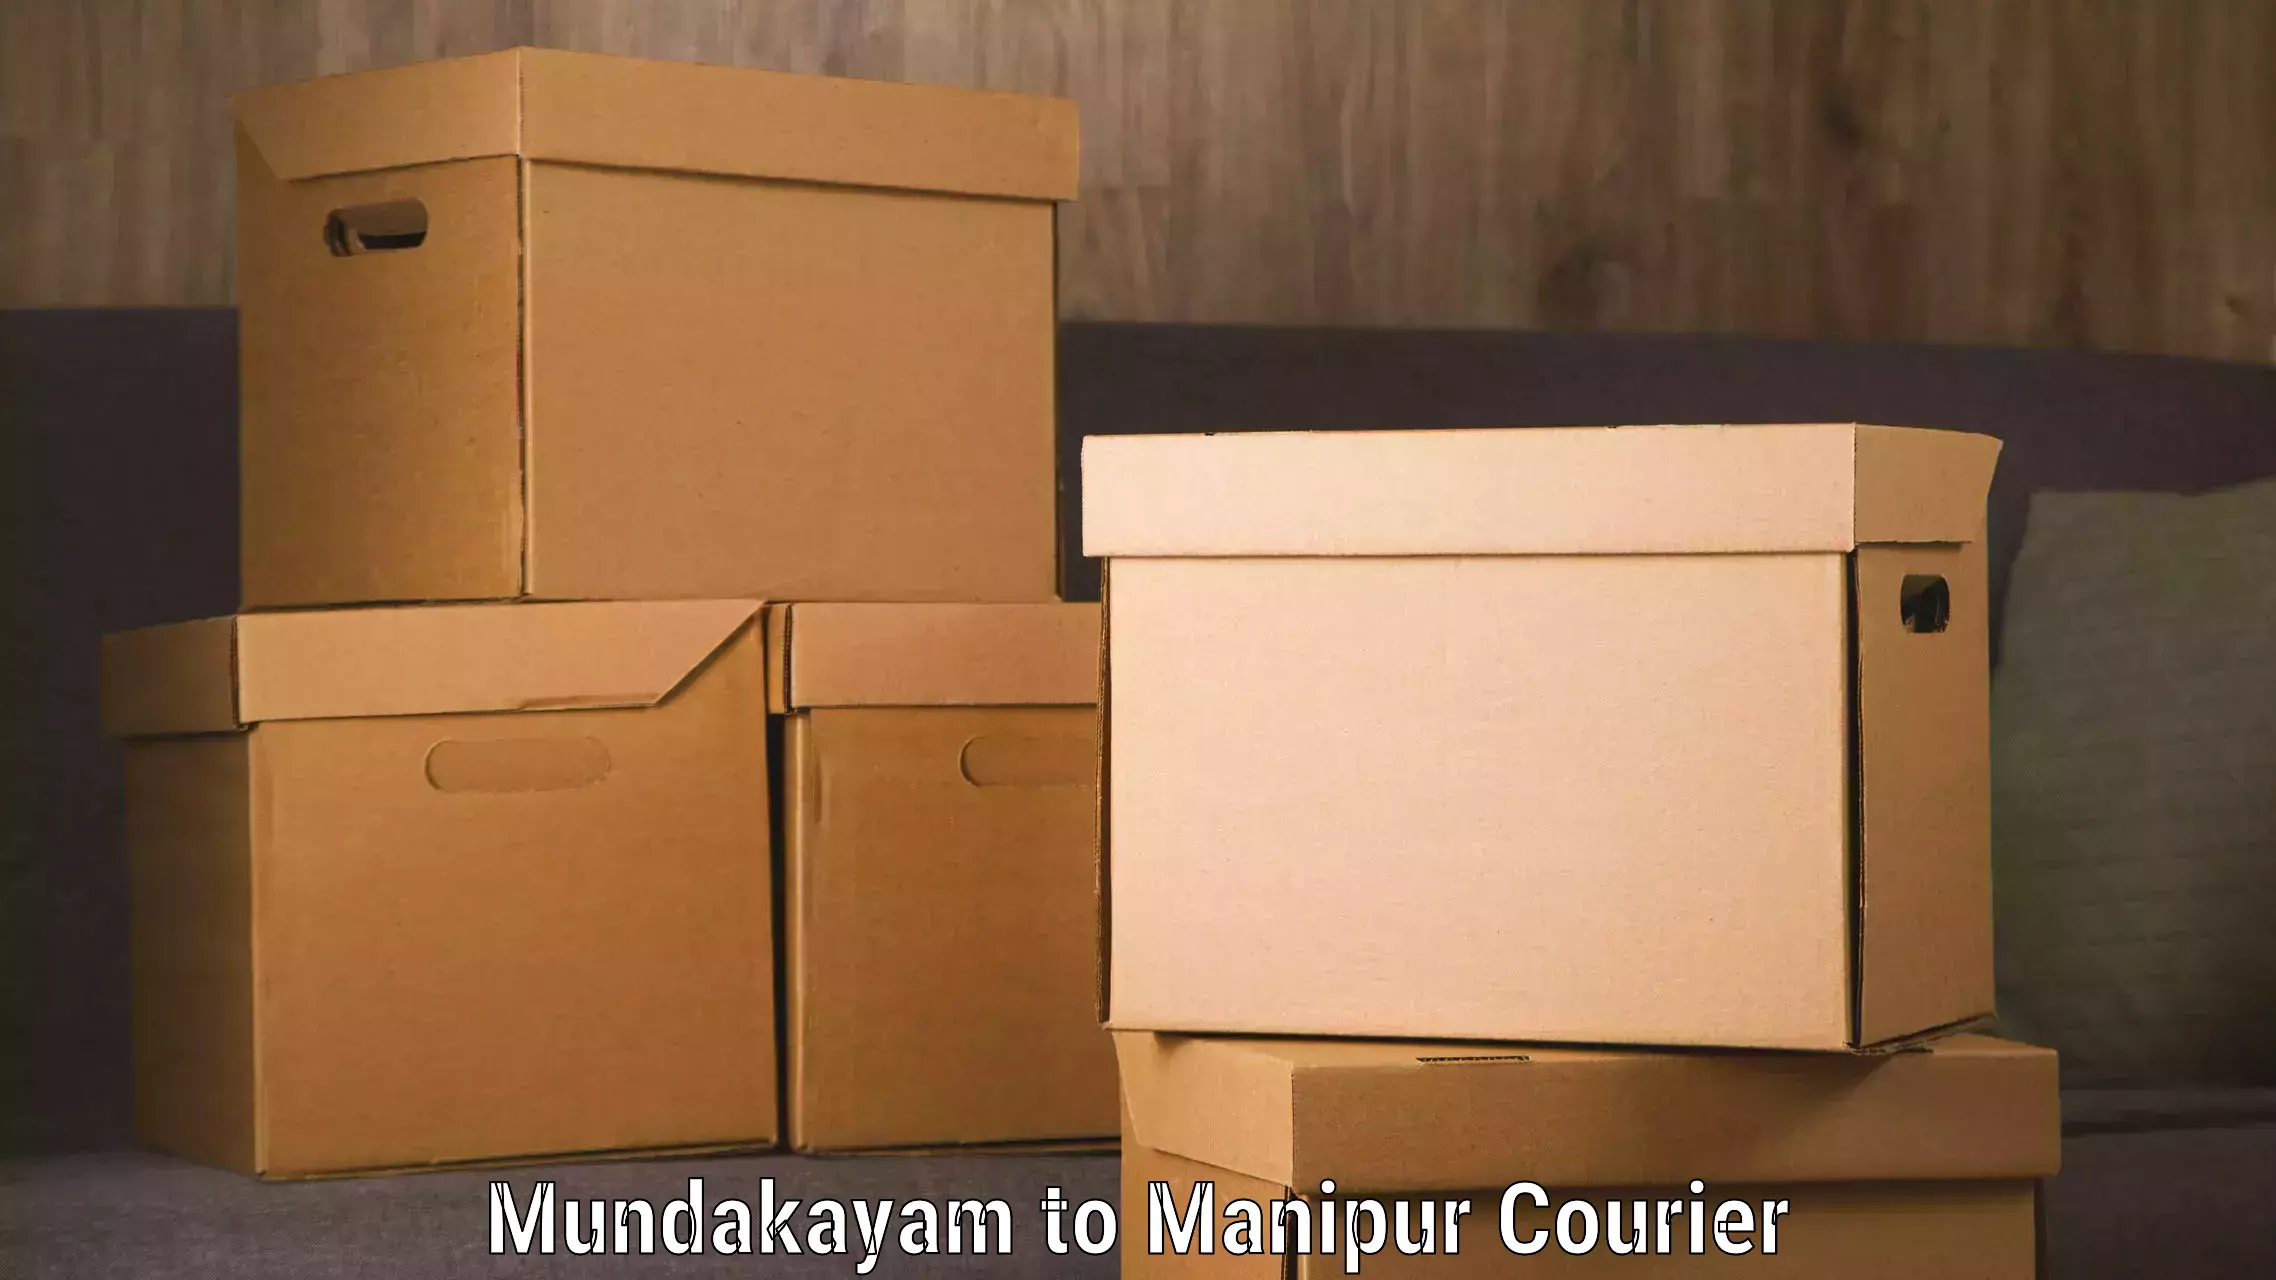 International courier networks Mundakayam to Churachandpur